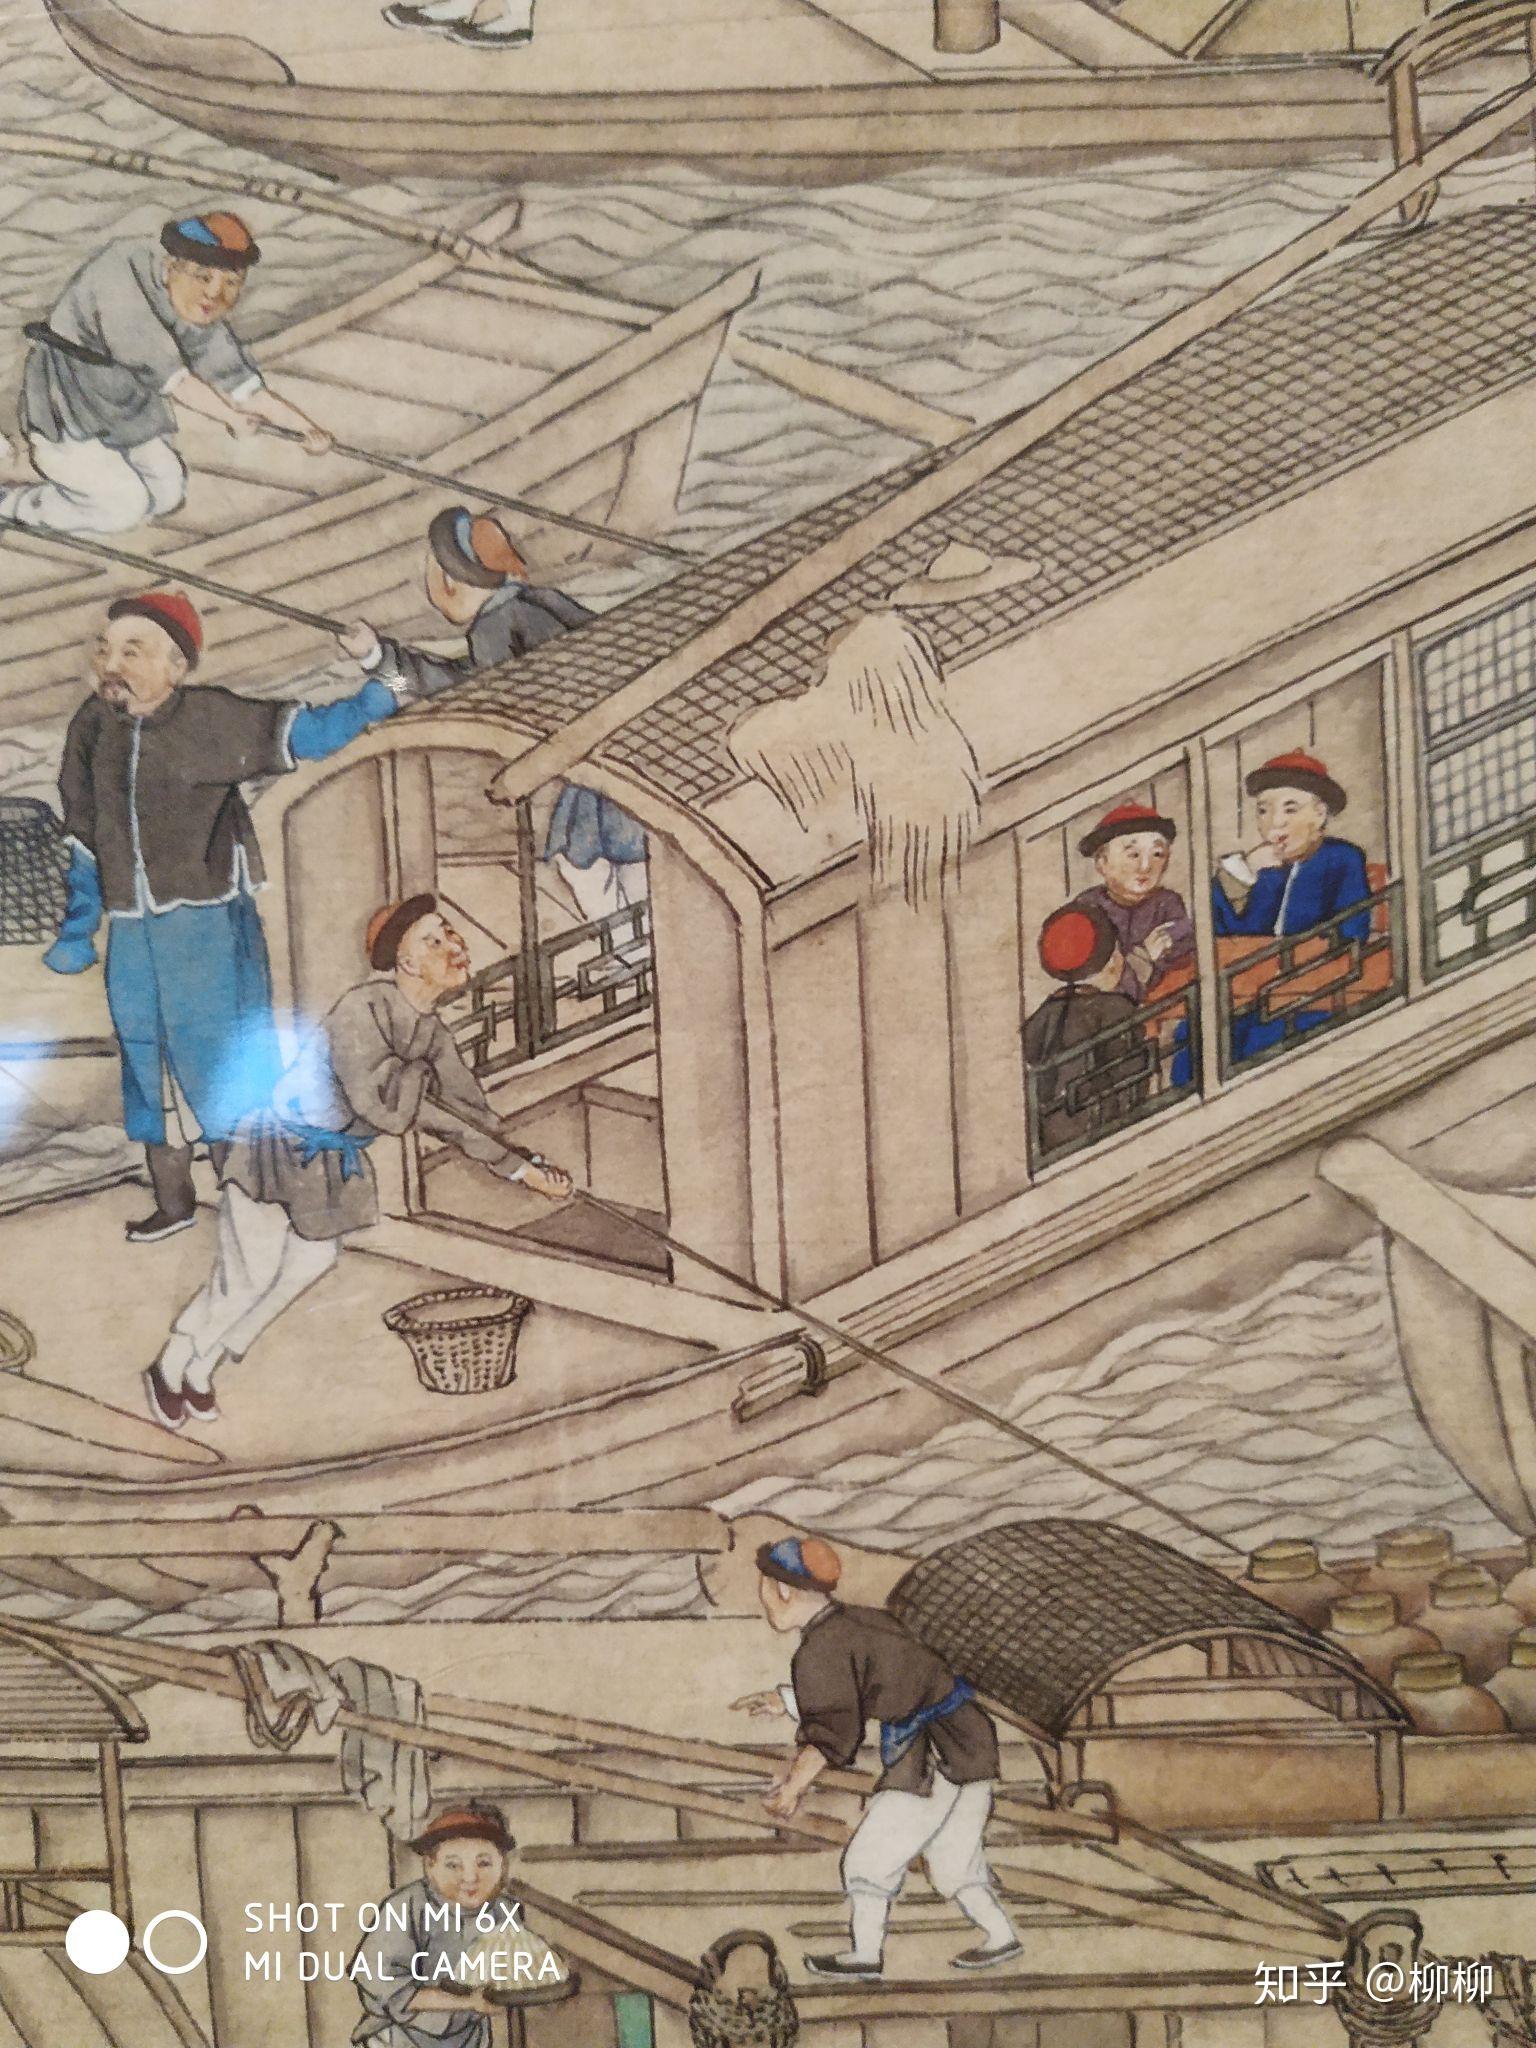 国家博物馆里的乾隆南巡图第六卷真是一幅活生生的江苏风土人情画卷